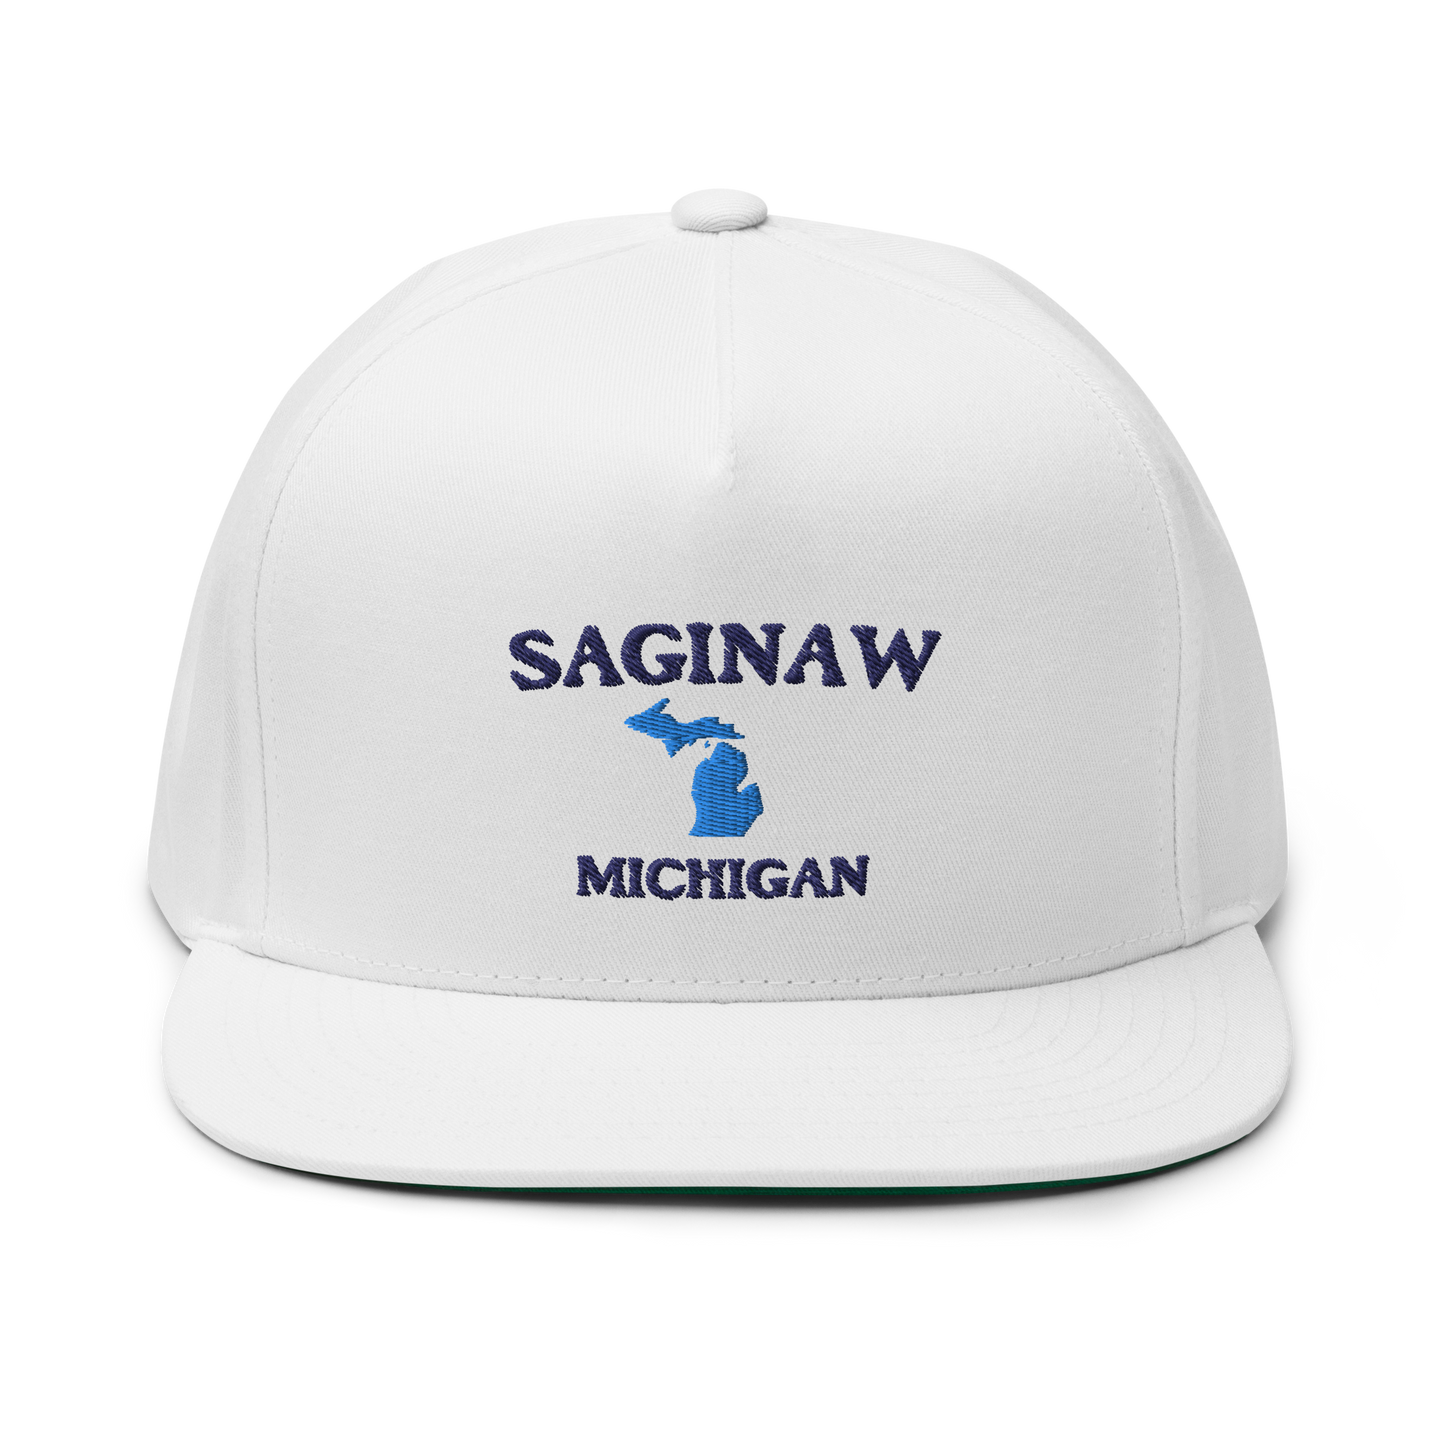 'Saginaw Michigan' Flat Bill Snapback (w/ Michigan Outline)